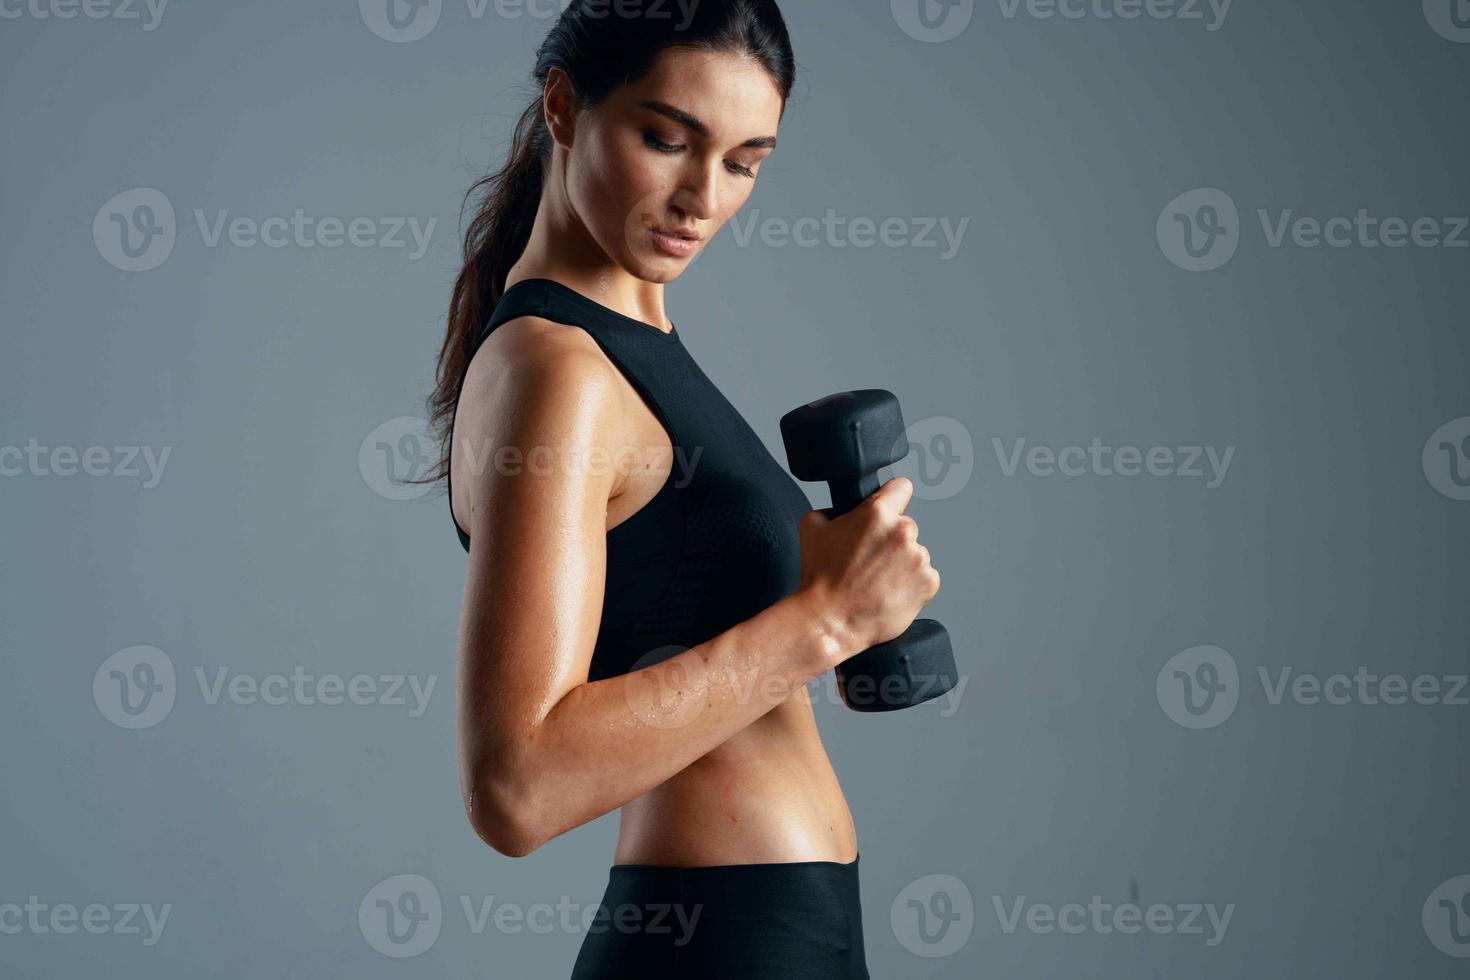 athlétique femme secoue muscles svelte figure faire des exercices motivation photo